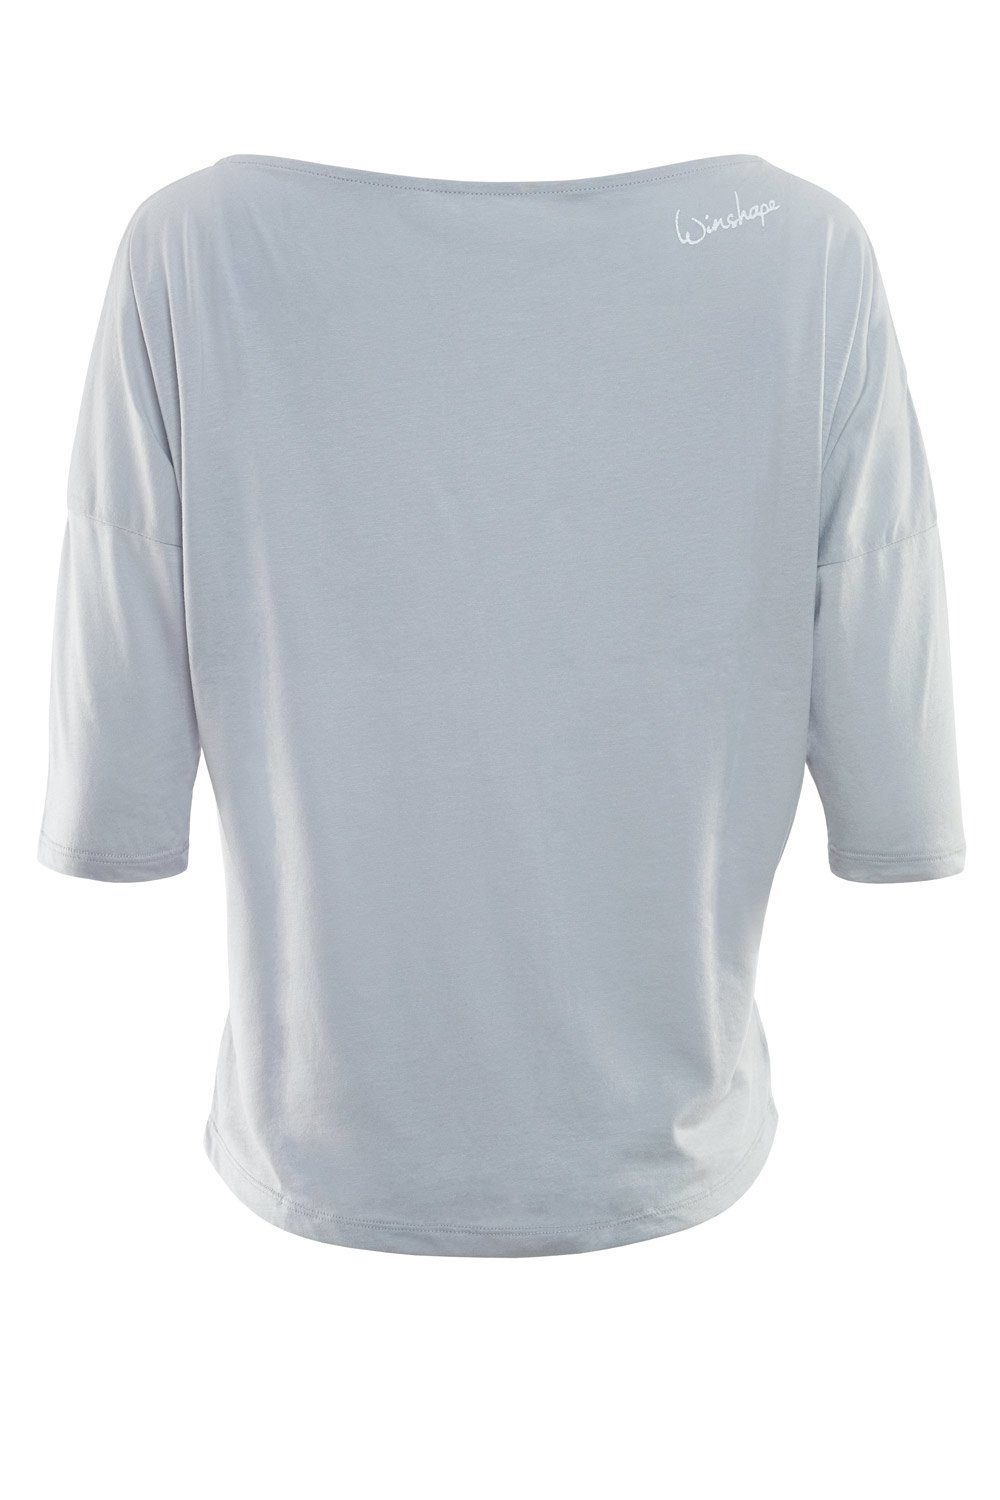 Winshape 3/4-Arm-Shirt MCS001 ultra - Glitzer-Aufdruck weiß glitzer leicht grey weißem mit cool